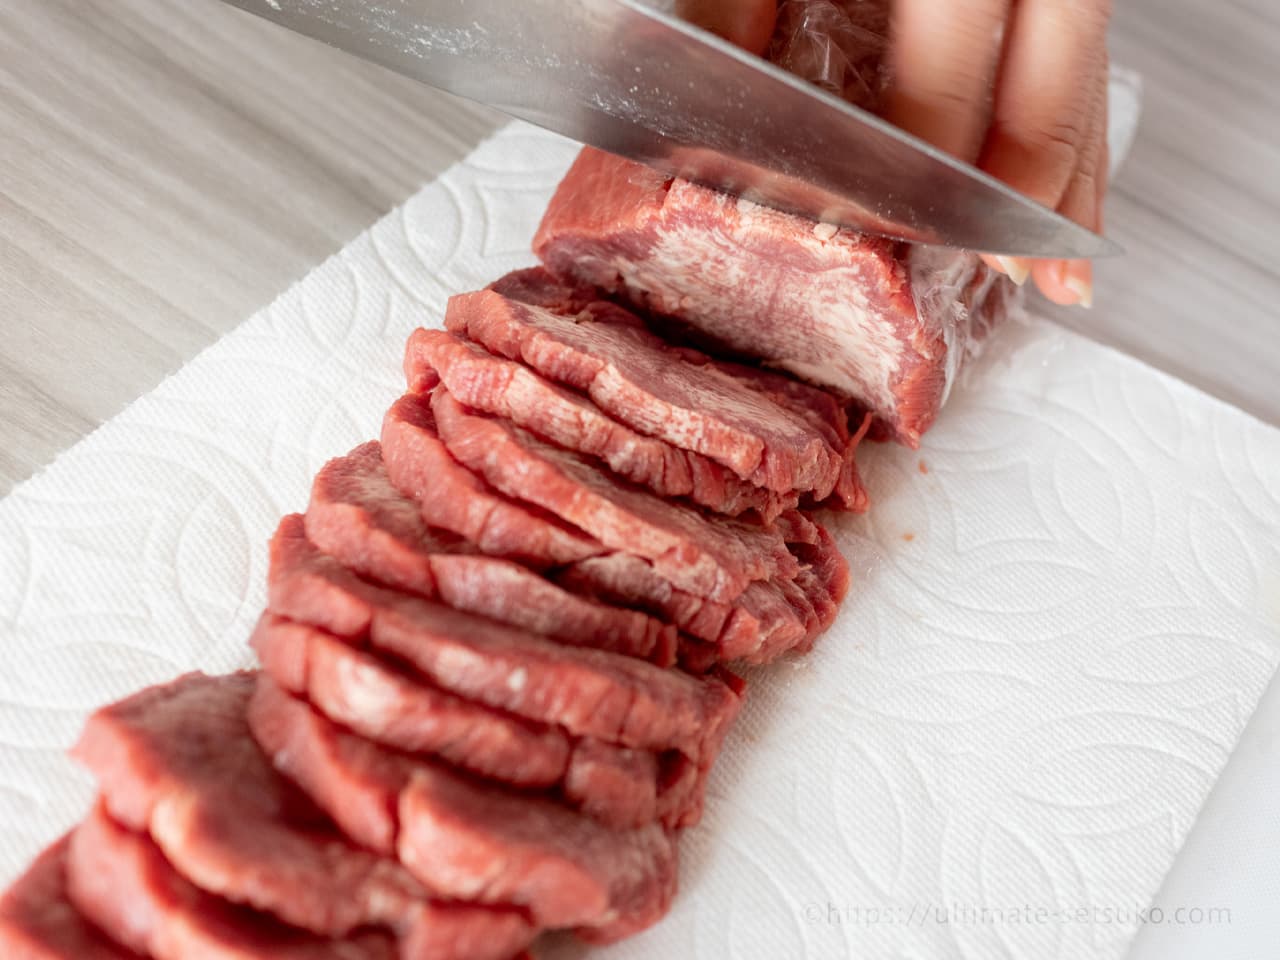 コストコのお肉 厳選おすすめ商品ランキングtop56 年最新版